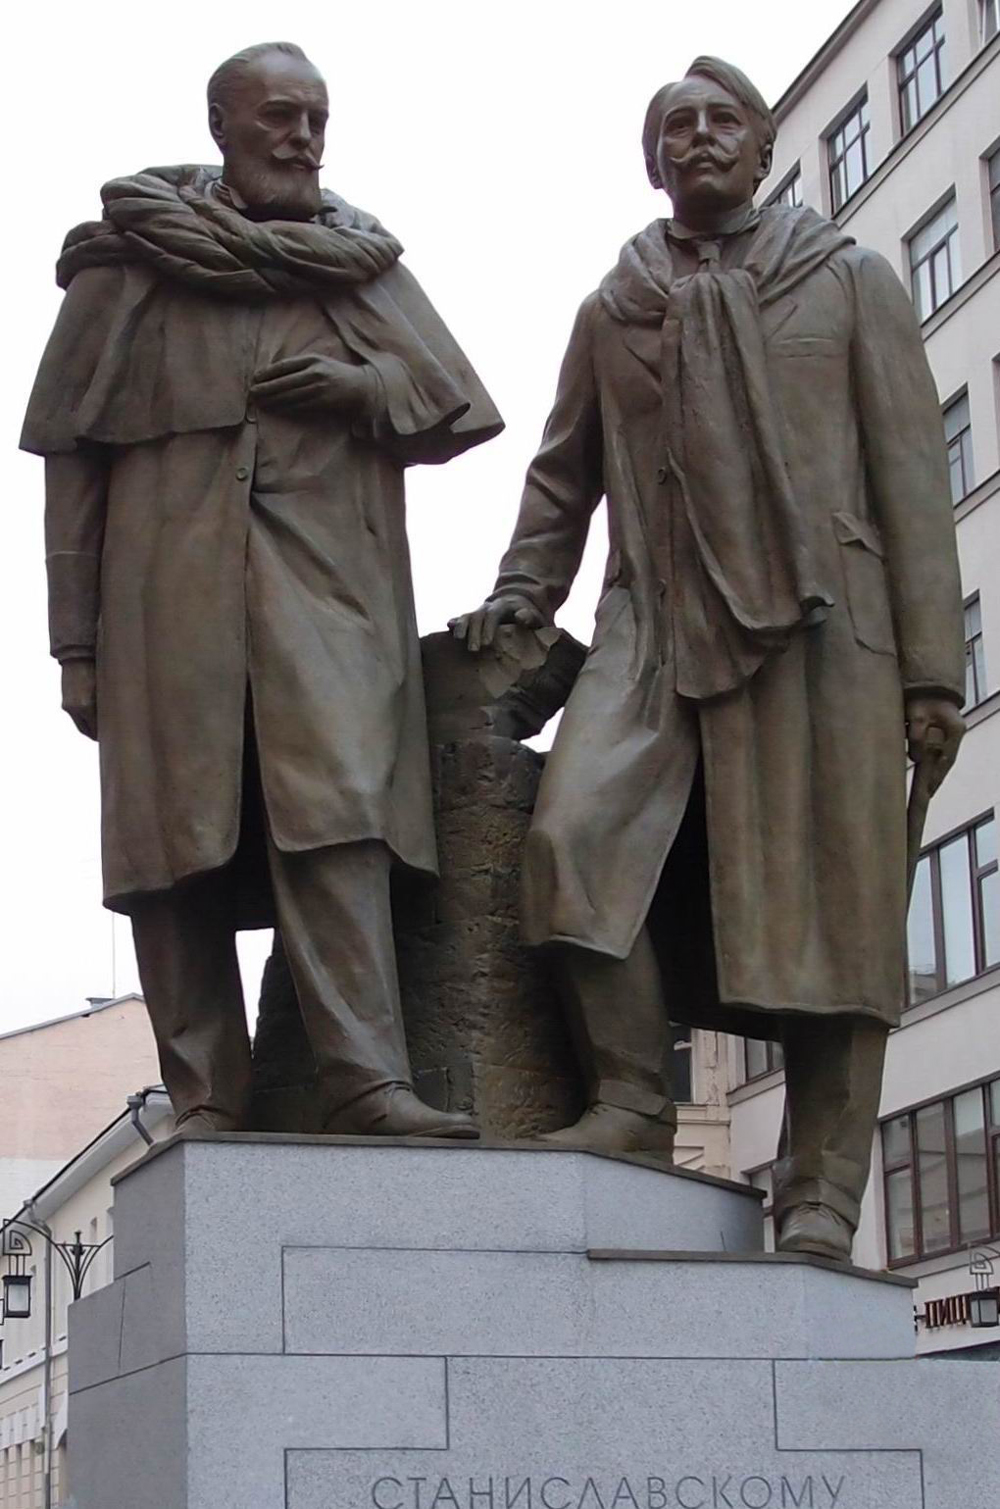 Памятник Станиславскому К.С. (1863–1938) и Немировичу-Данченко В.И. (1858–1943), автор А.Морозов, в Камергерском переулке, открыт 3.9.2014.